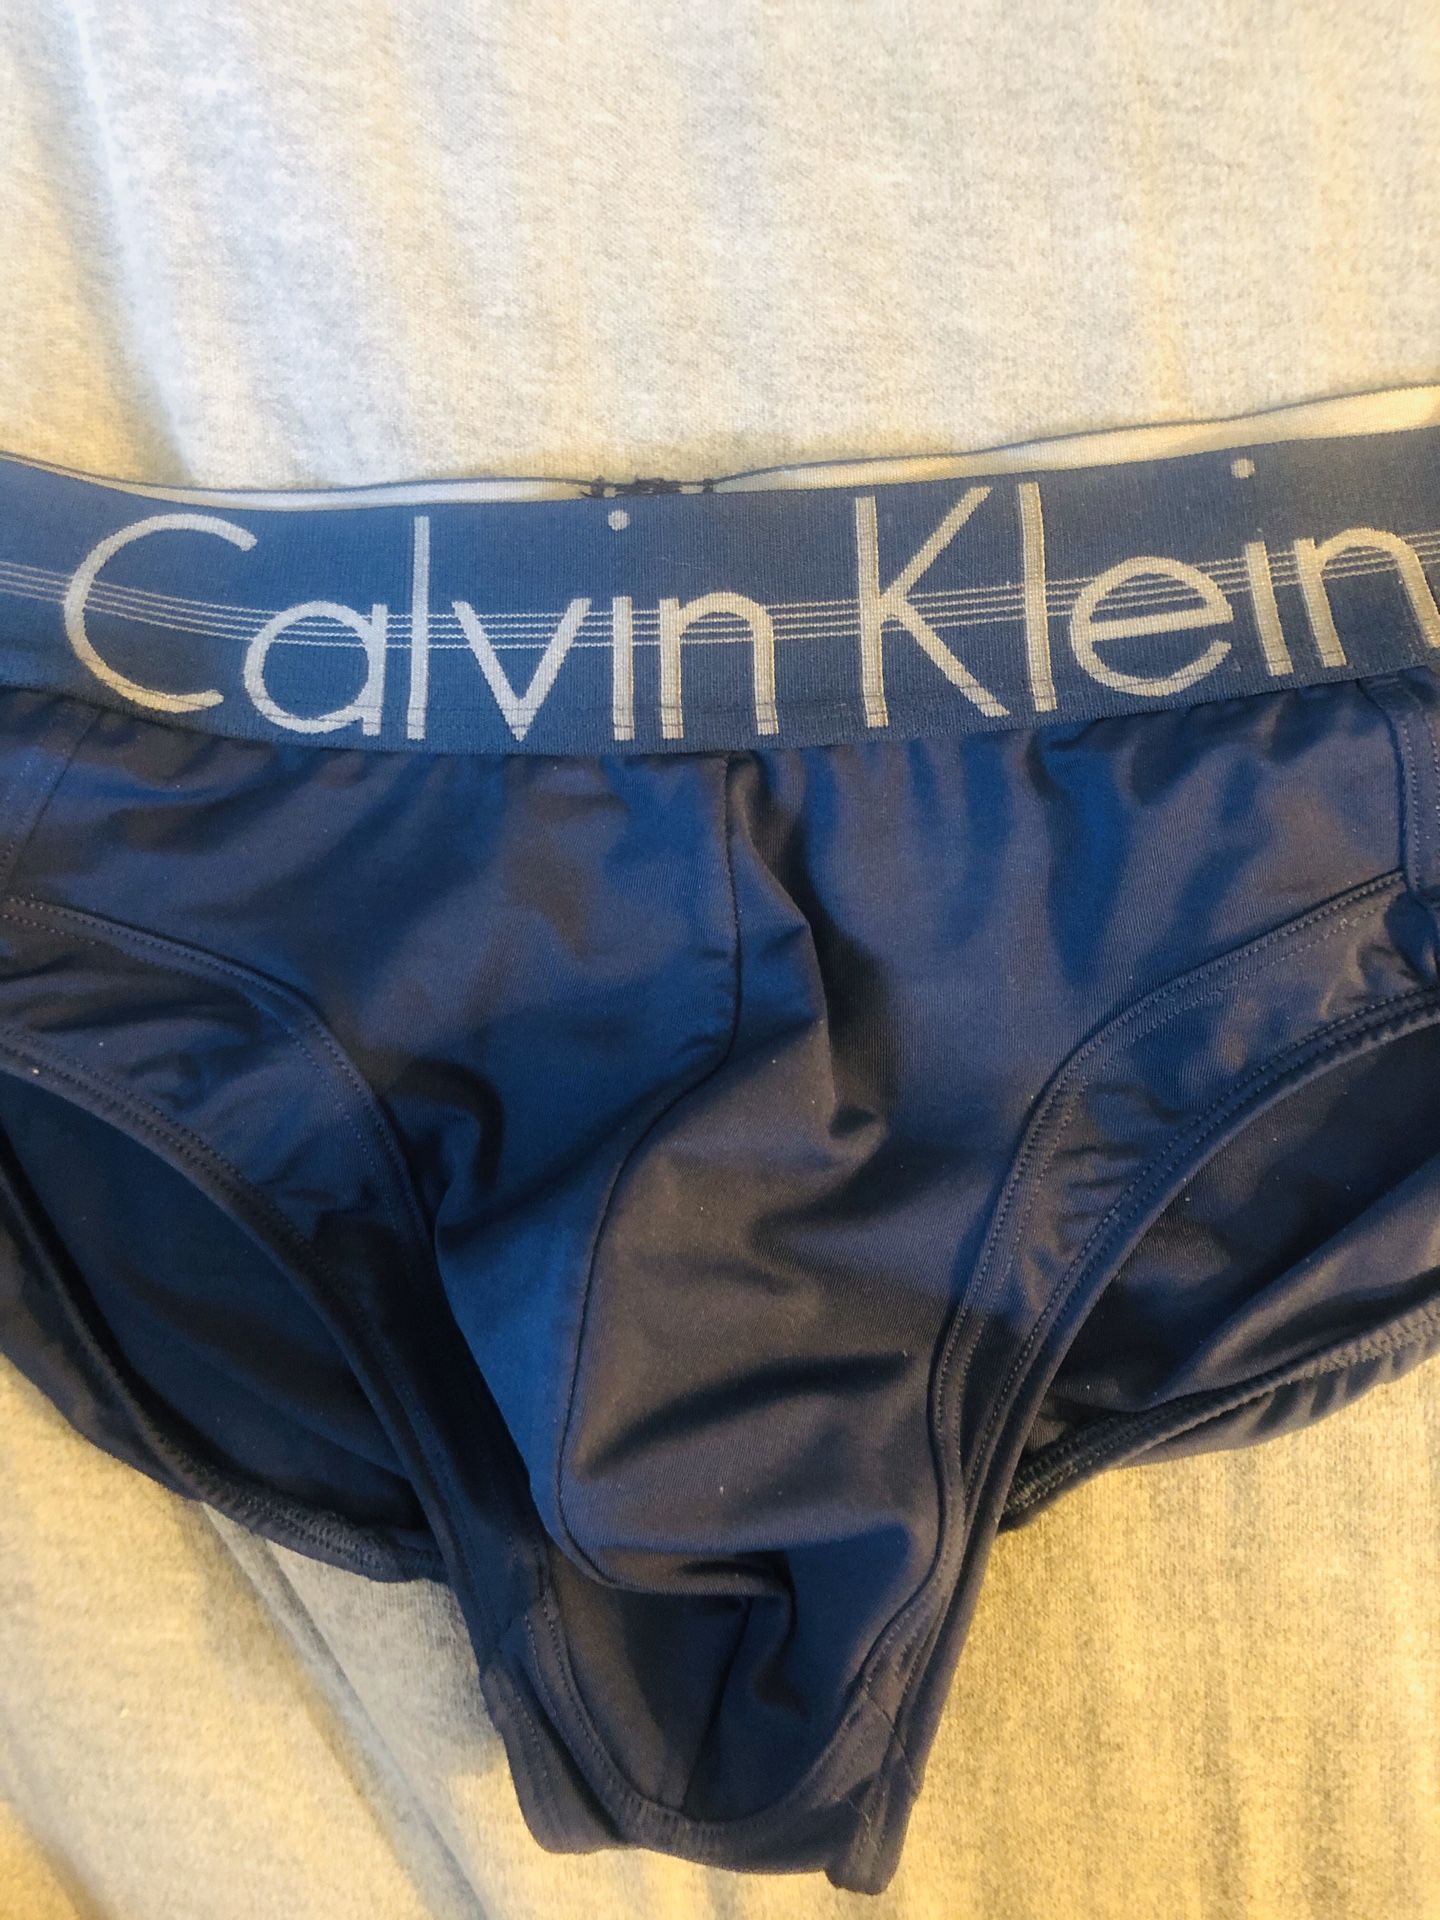 Calvin Klein underwear for Sale in Wilsonville, OR - OfferUp